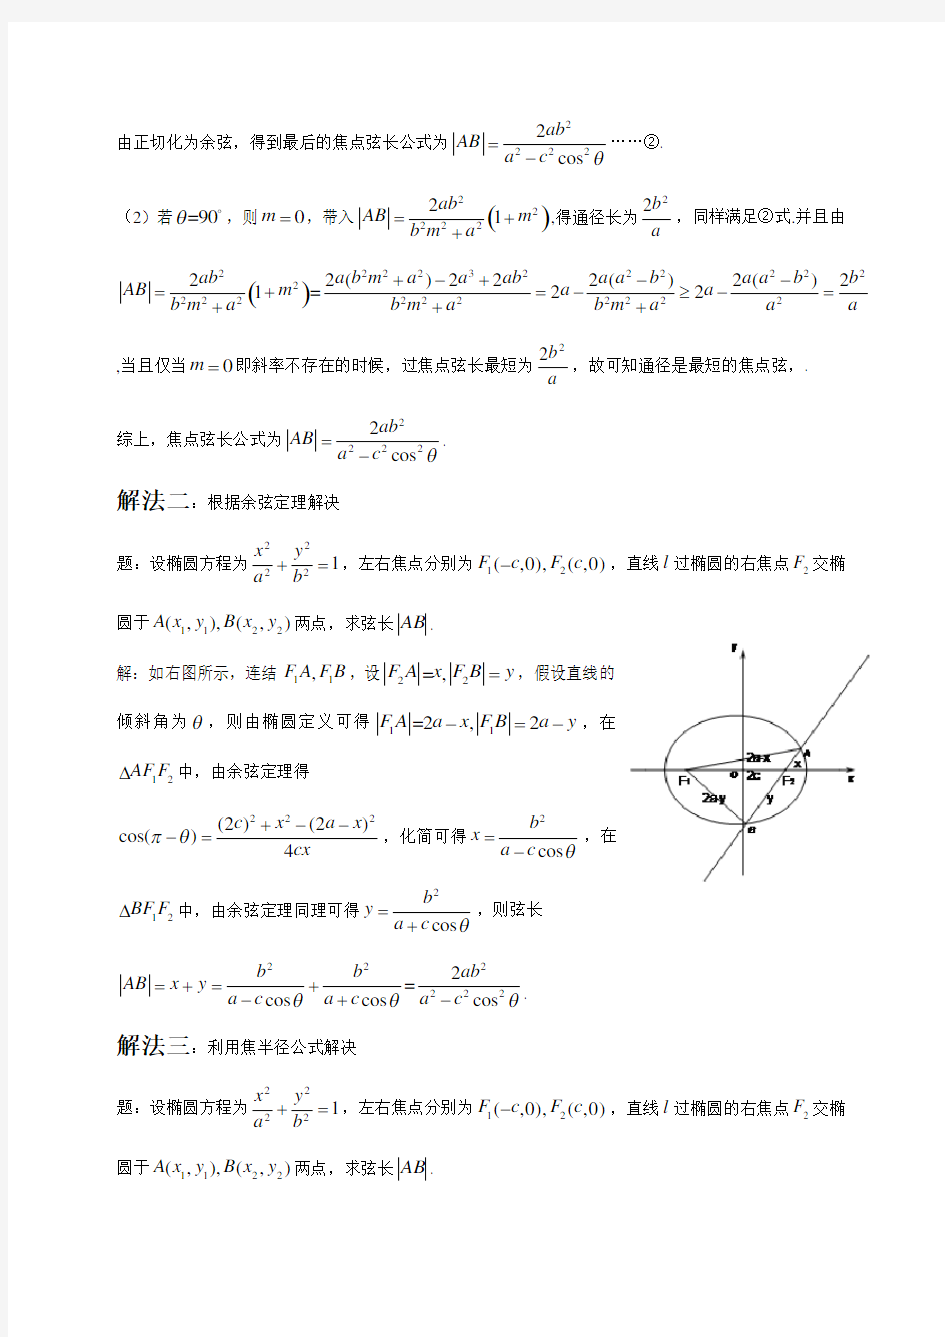 论文 椭圆的焦点弦长公式的四种推导方法及其应用